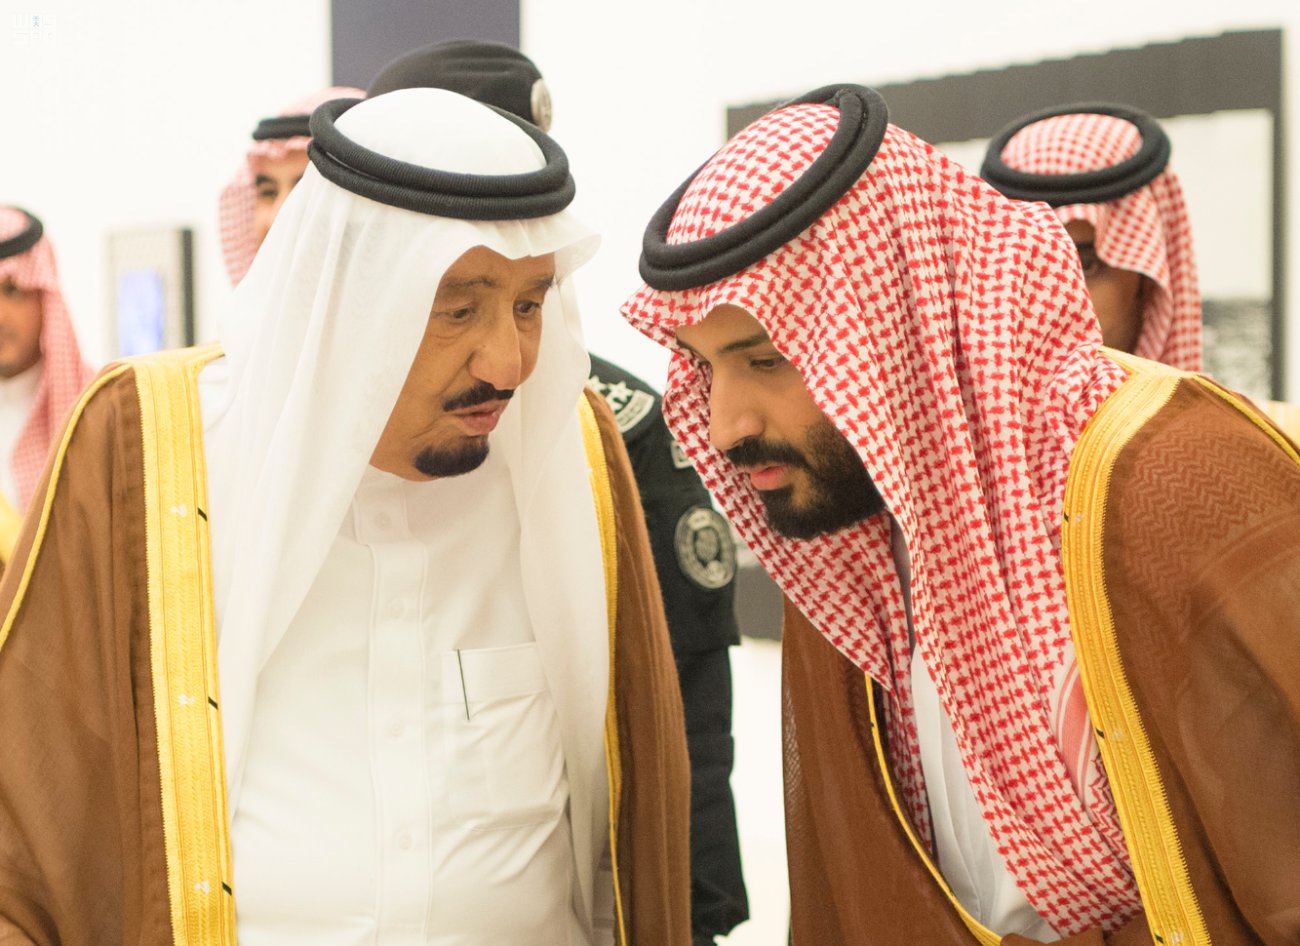 الملك سلمان ينيب الأمير محمد بن سلمان بإدارة شؤون الدولة خلال فترة غيابه عن المملكة